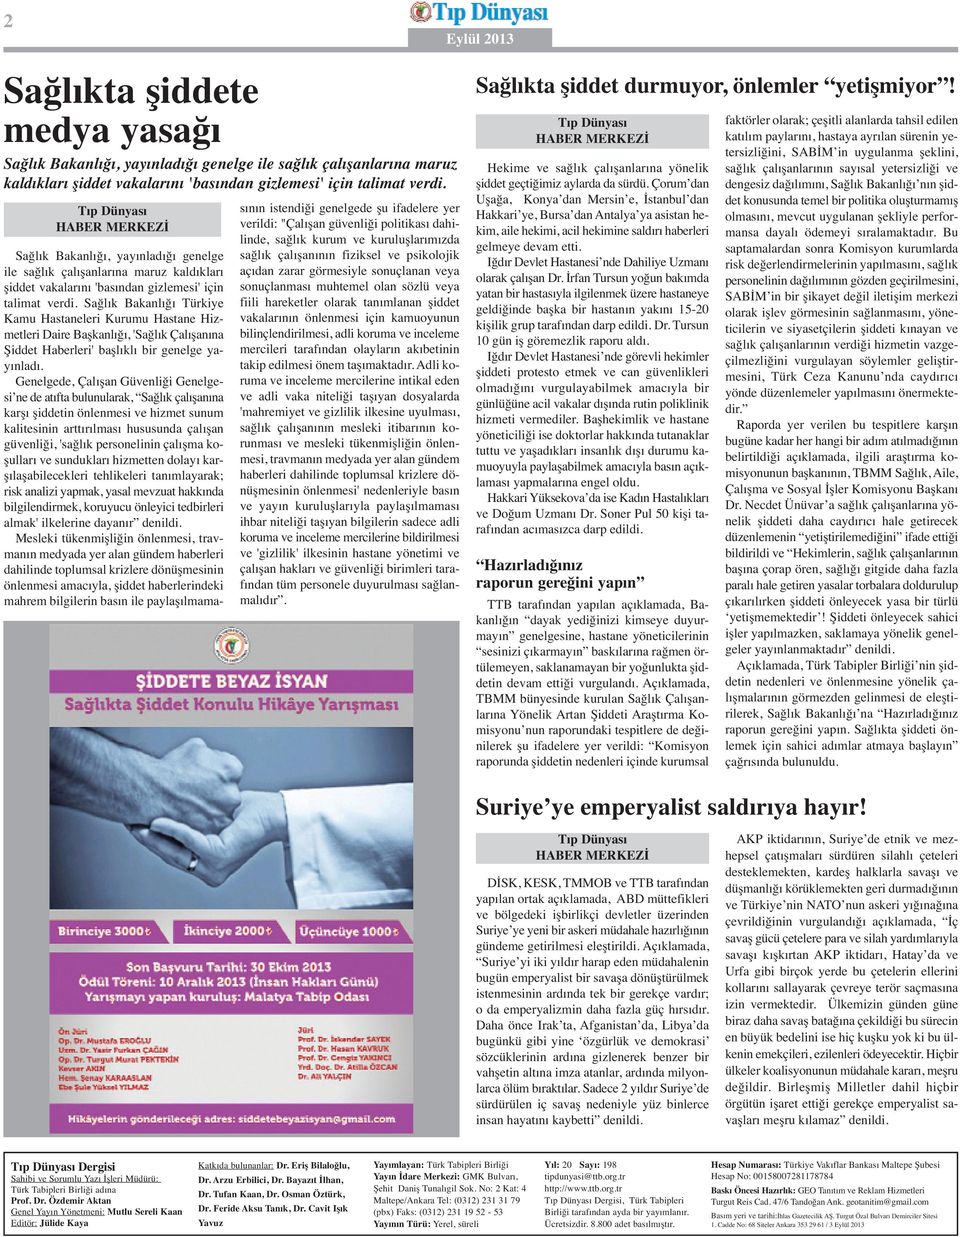 Sağlık Bakanlığı Türkiye Kamu Hastaneleri Kurumu Hastane Hizmetleri Daire Başkanlığı, 'Sağlık Çalışanına Şiddet Haberleri' başlıklı bir genelge yayınladı.